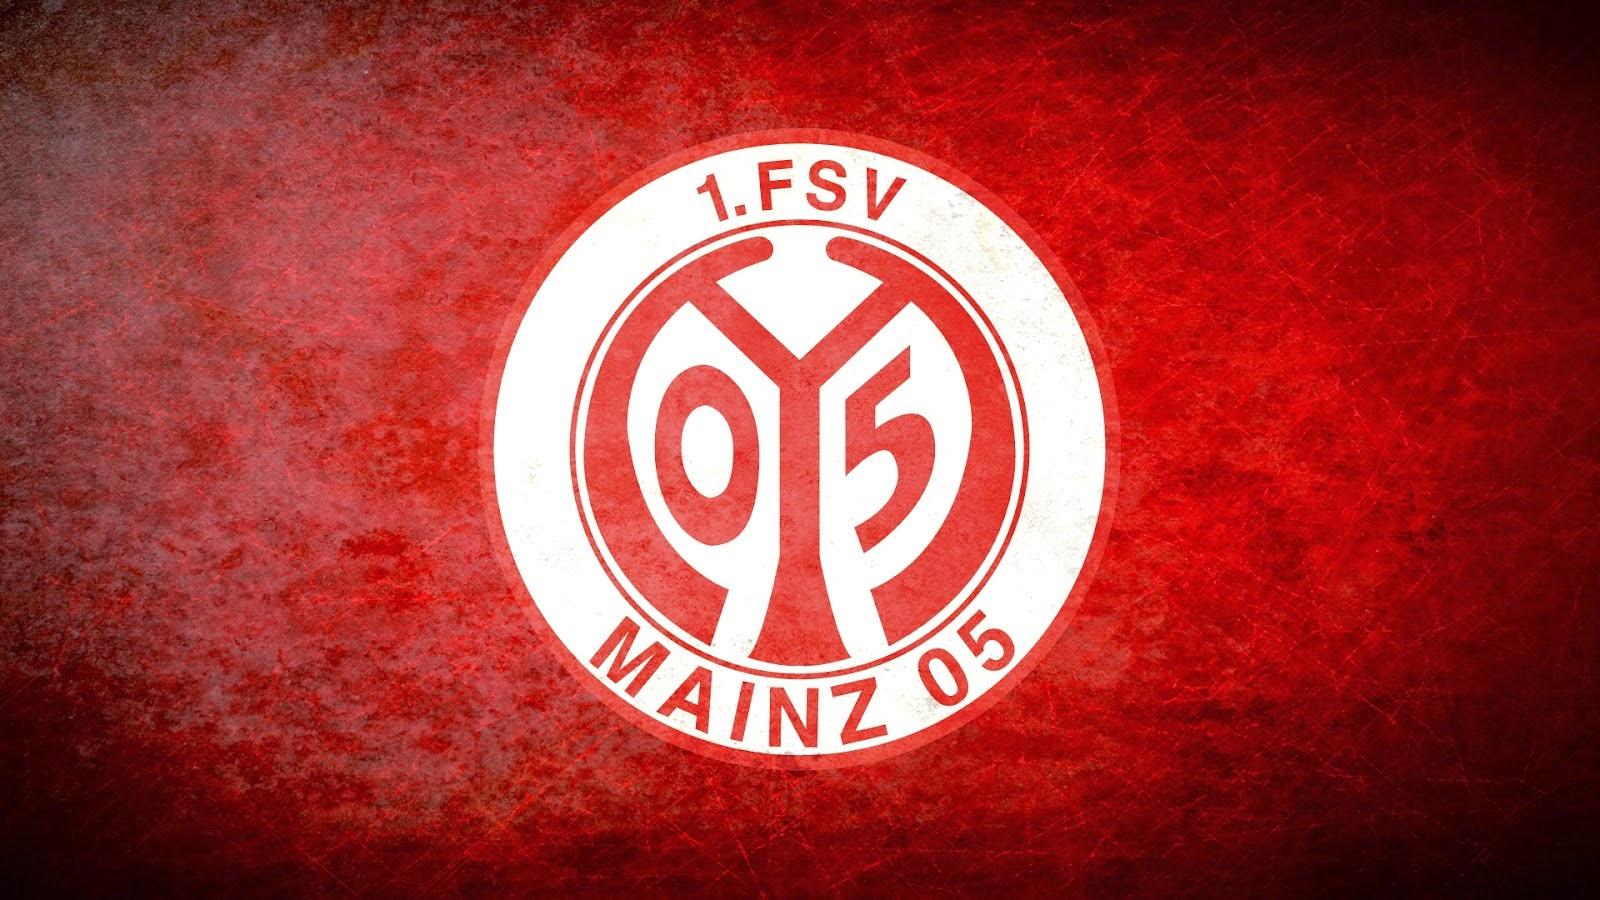 Fsv Mainz 05 Wallpapers